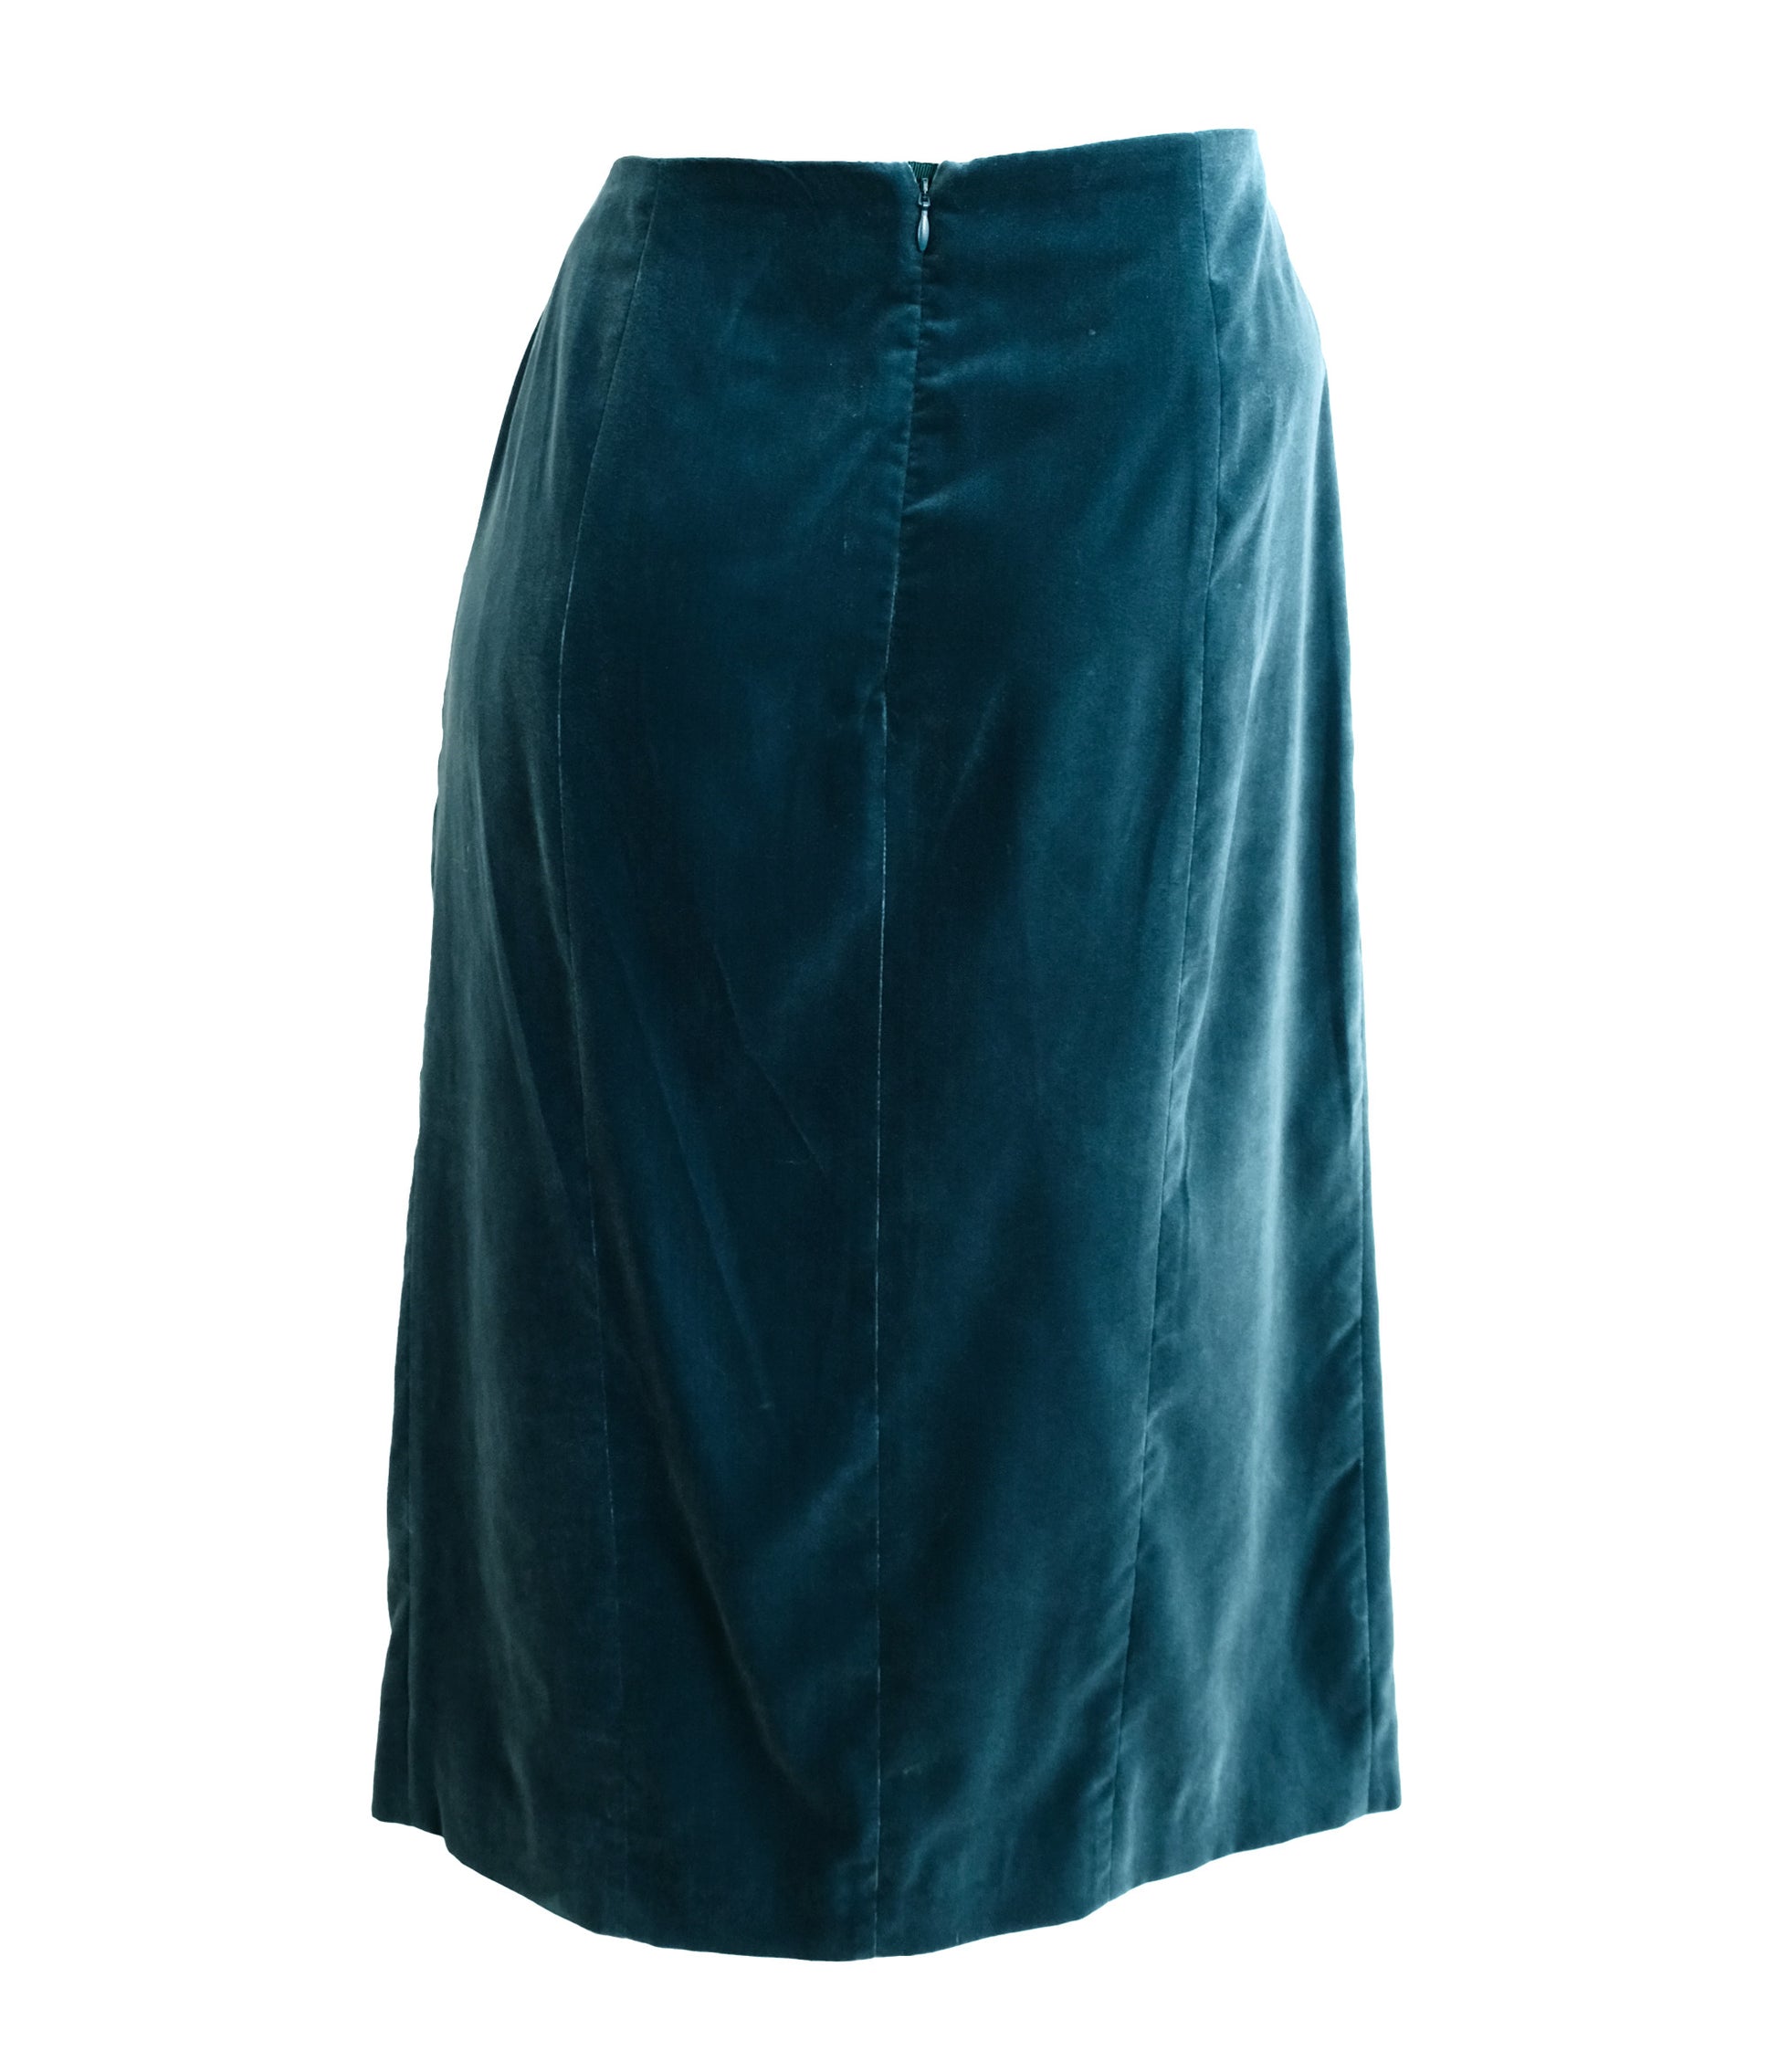 Carven Gathered Apron Skirt in Teal Velvet, UK12-14